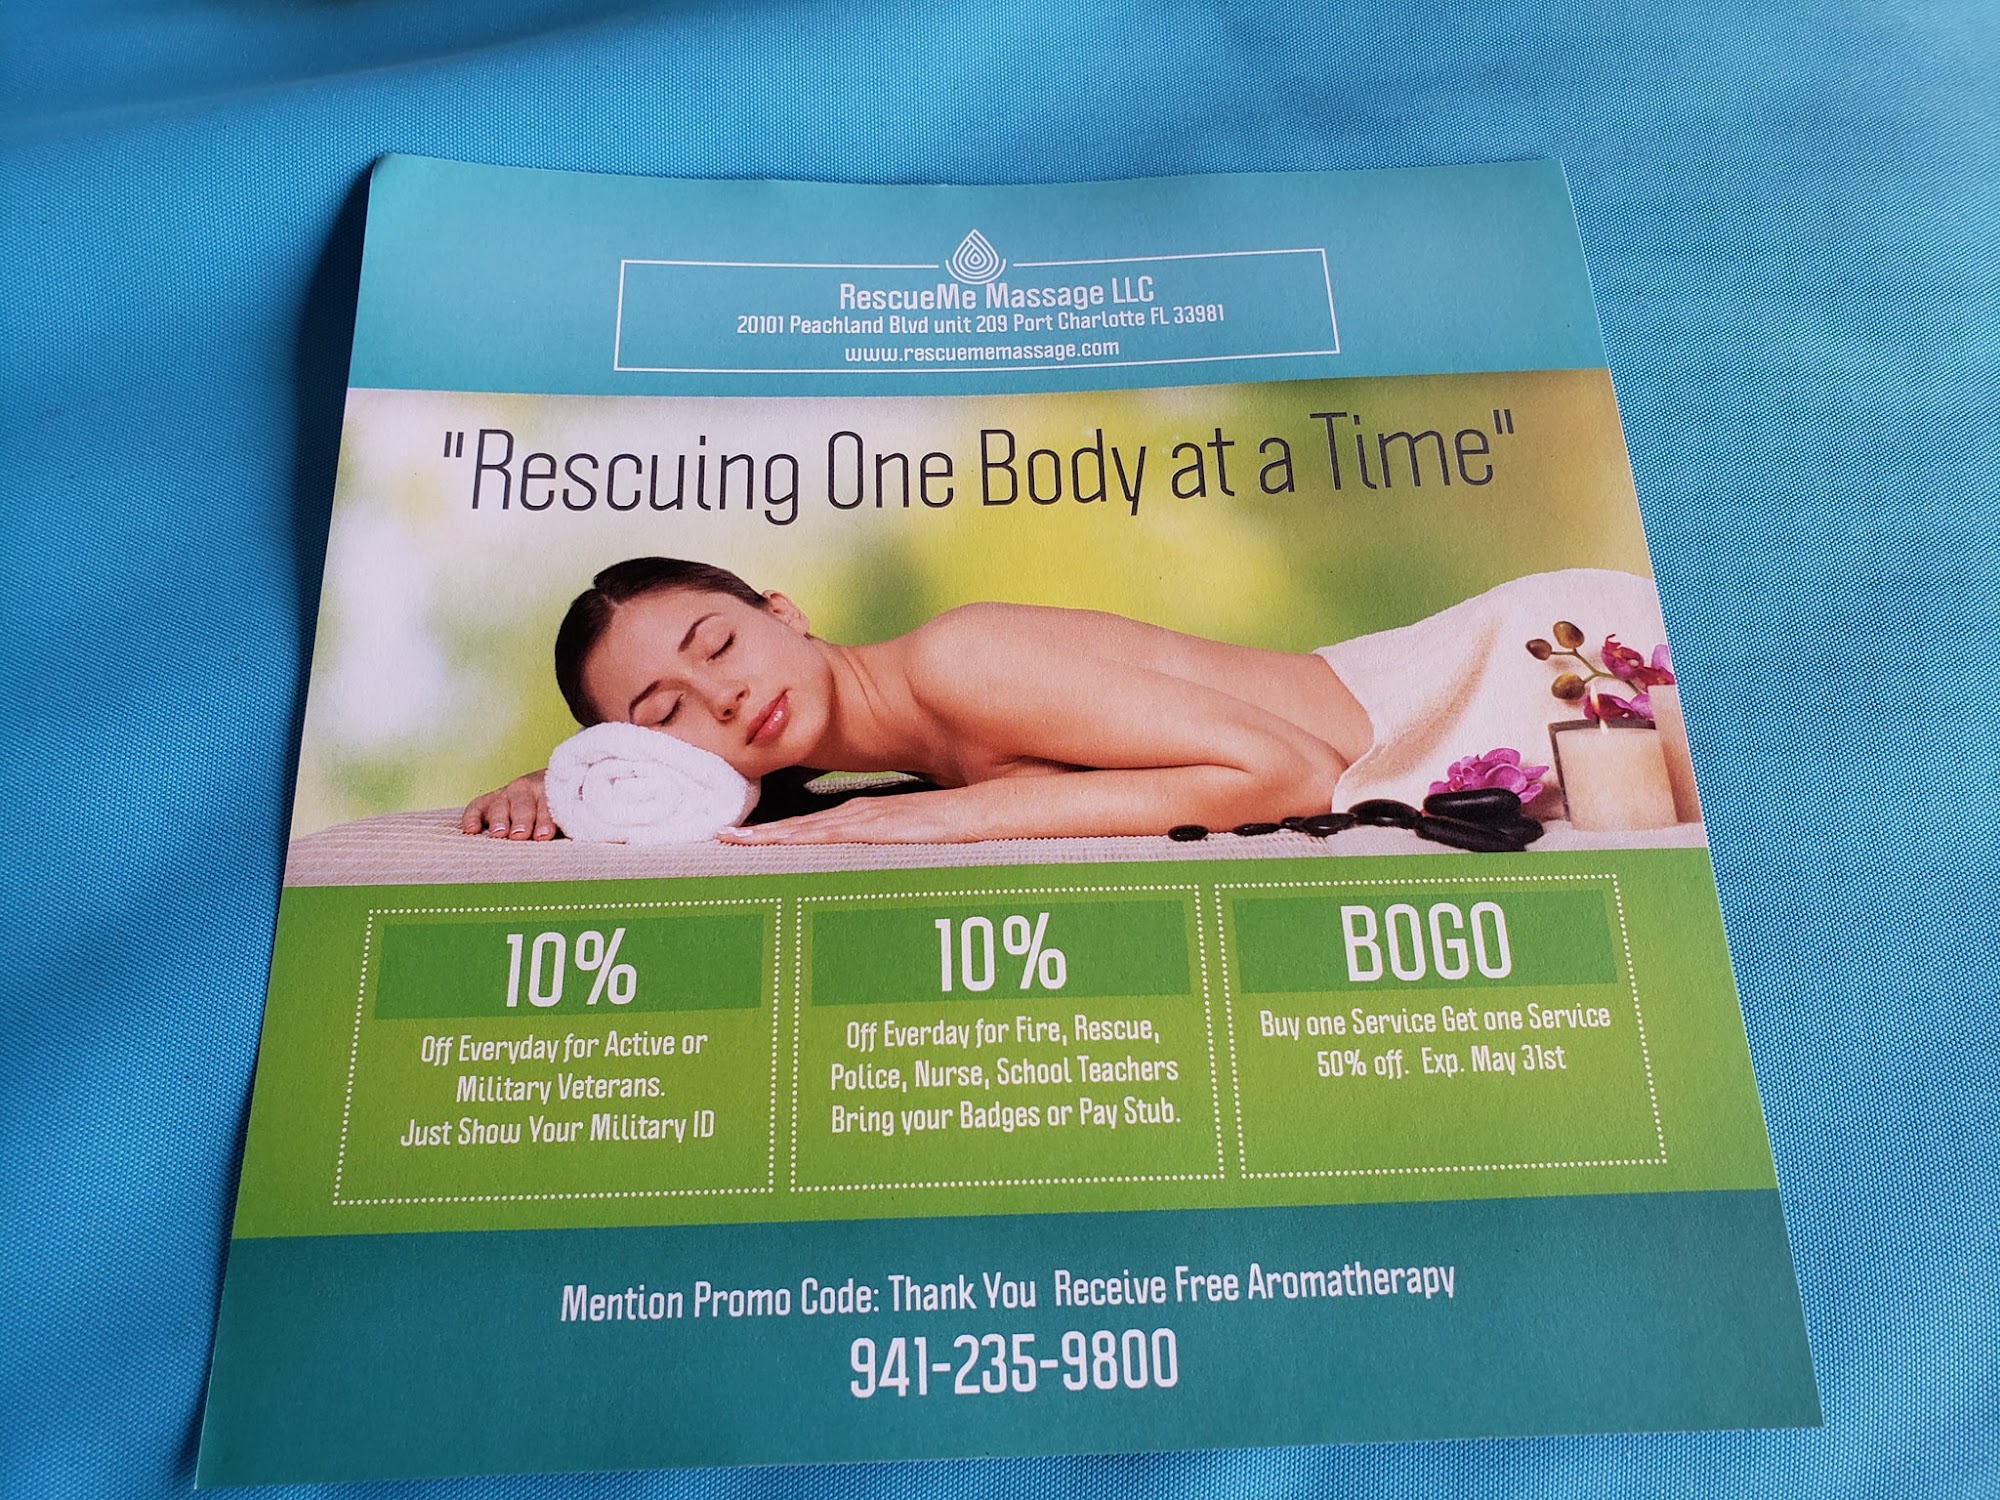 RescueMe Massage LLC.